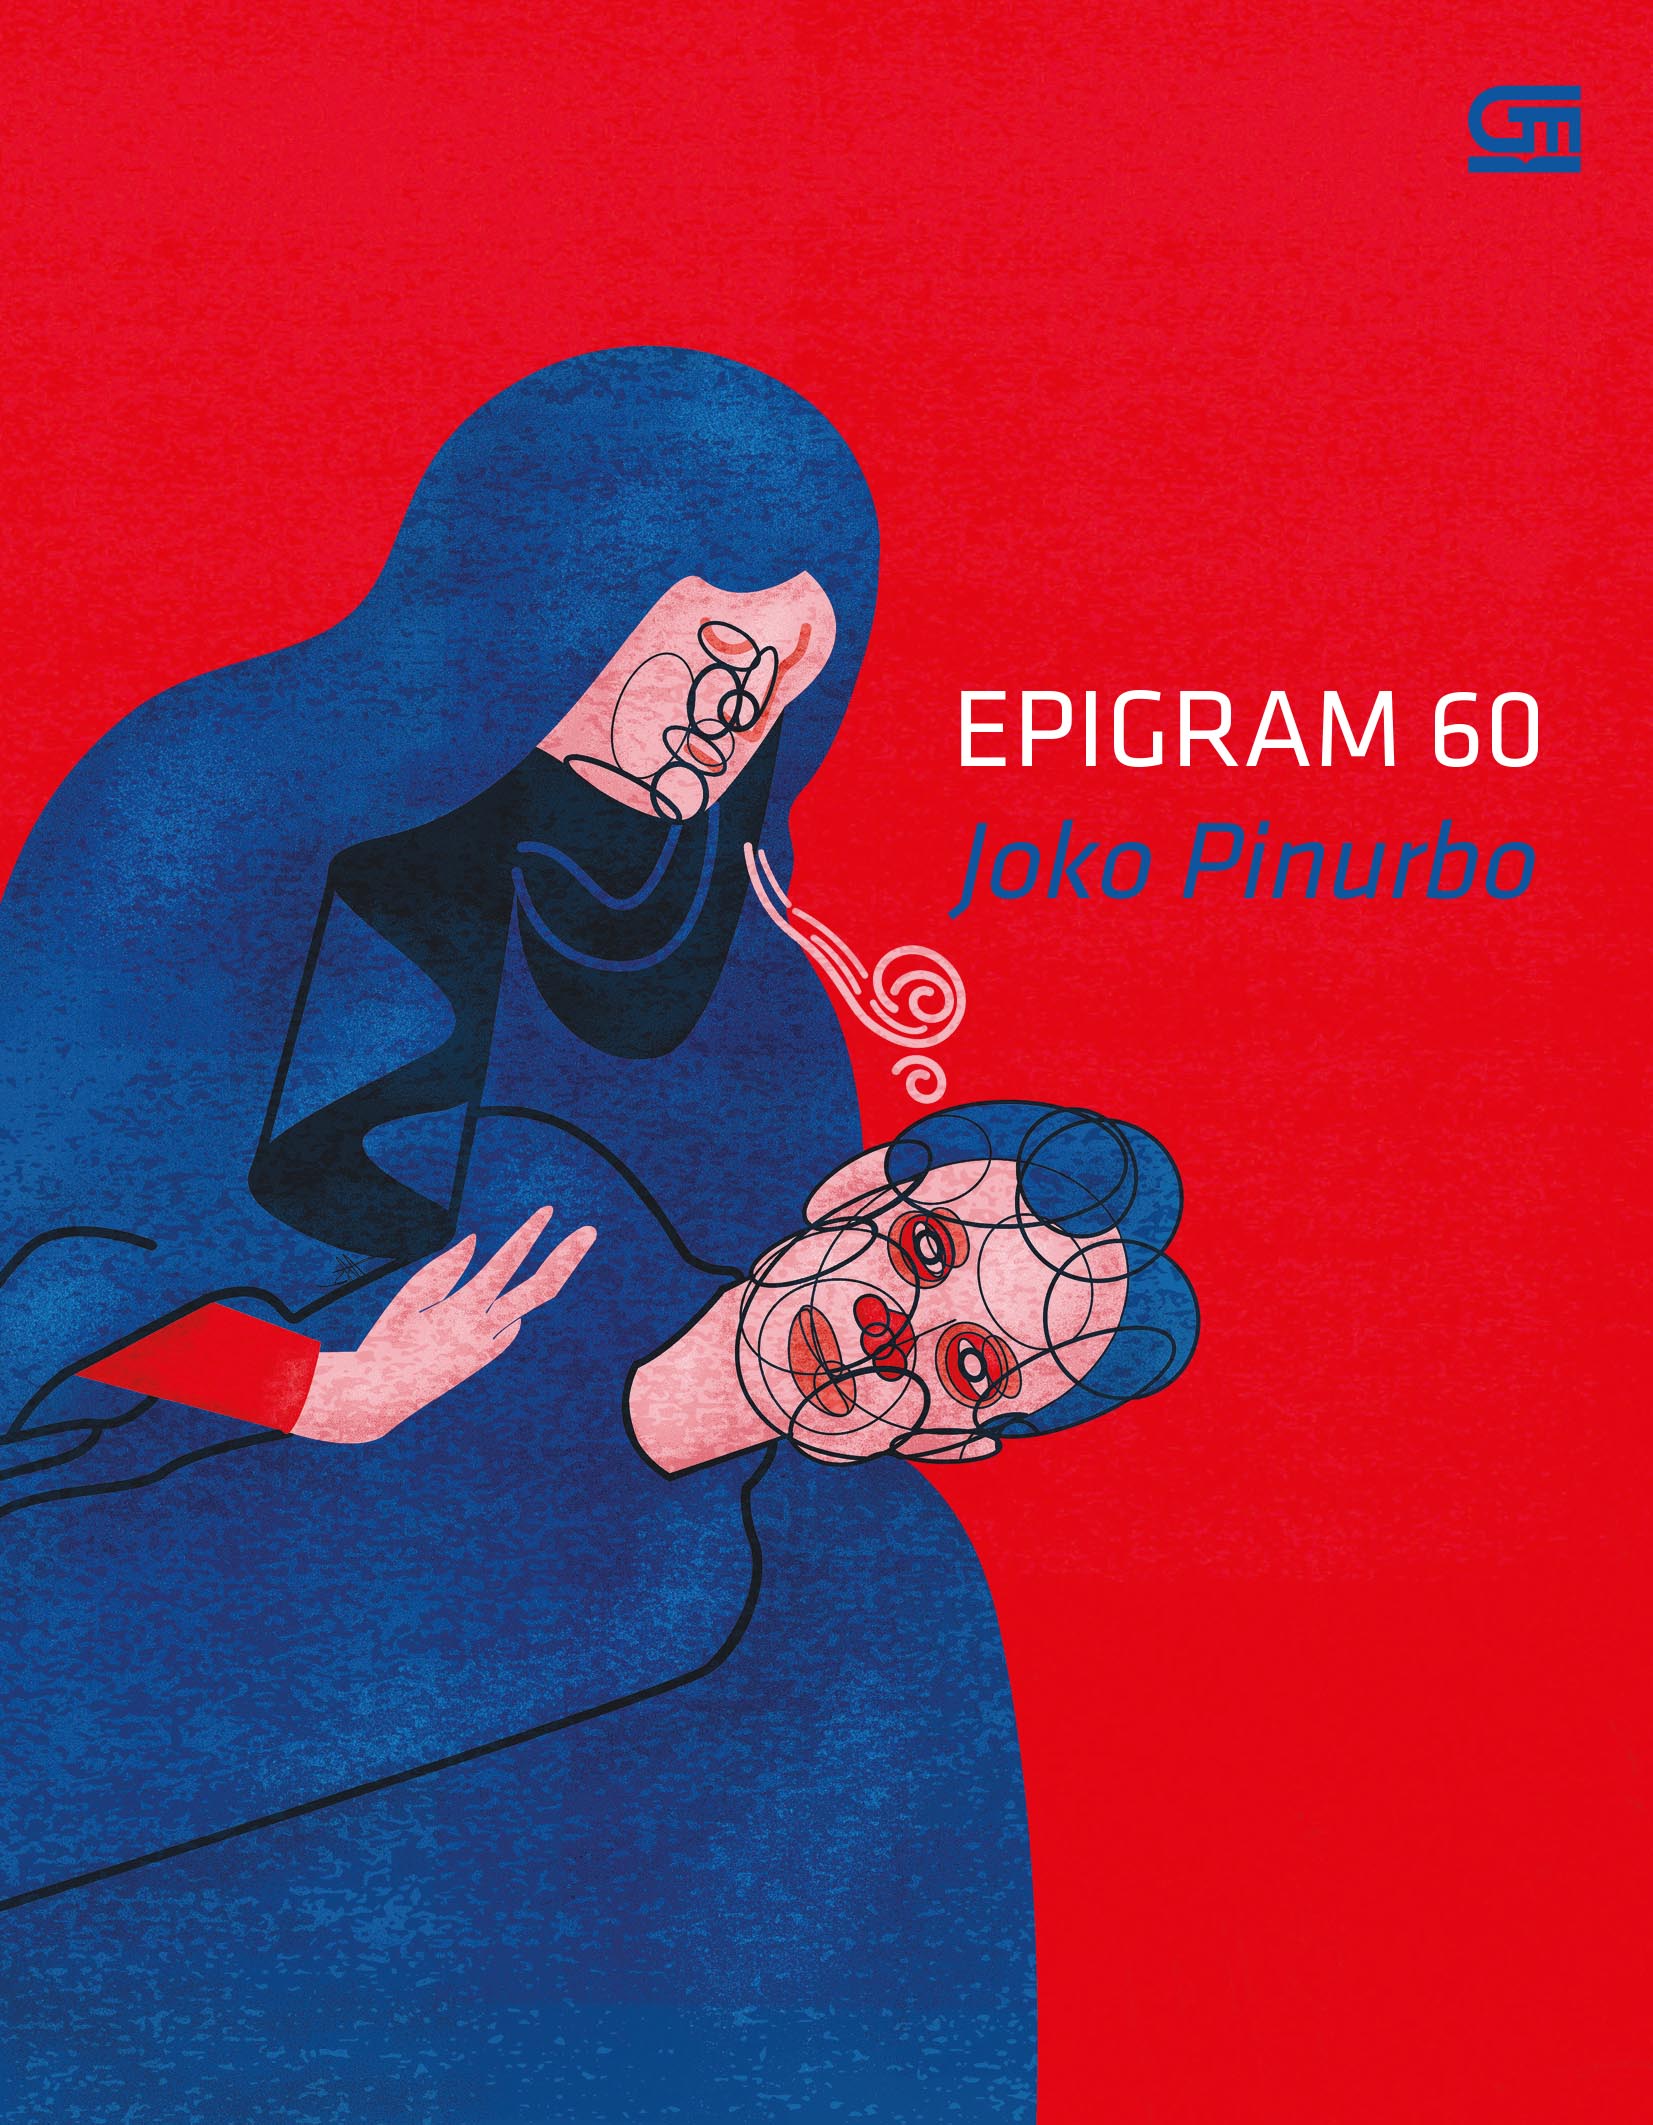 Epigram 60